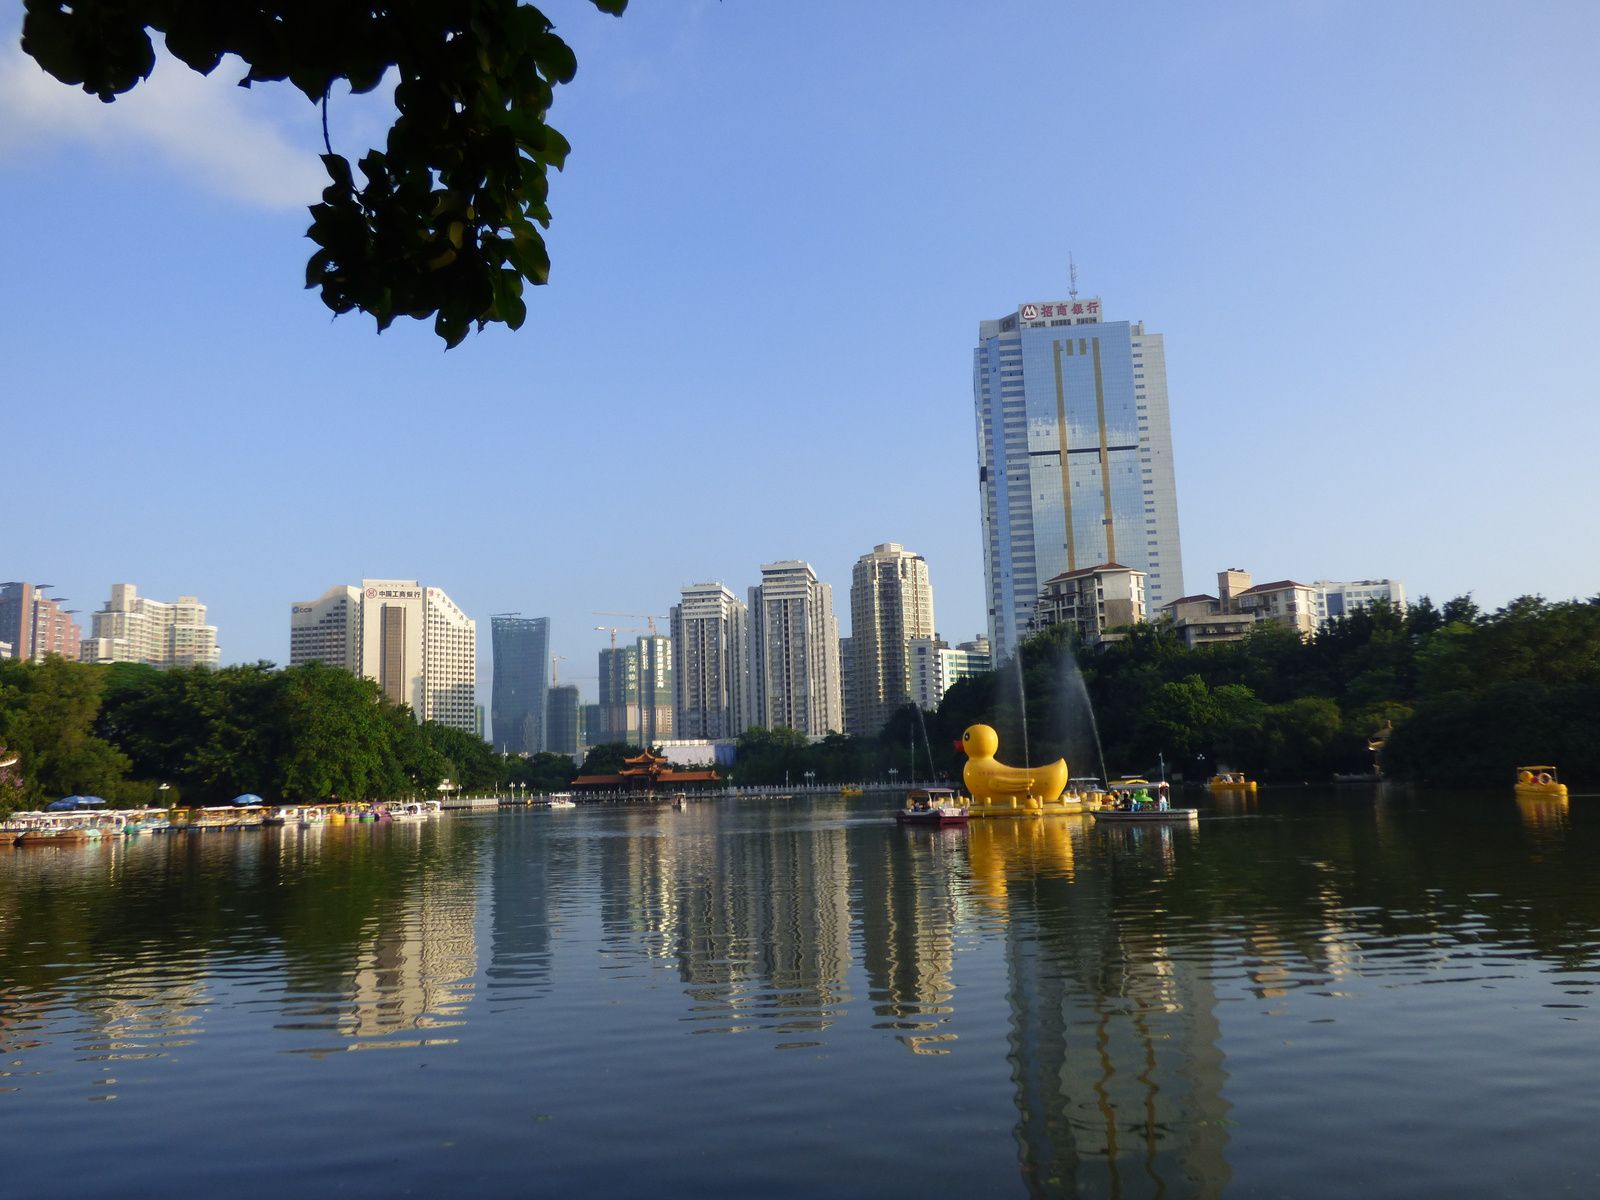 Le parc Lizhi 荔枝公园, Shenzhen 深圳